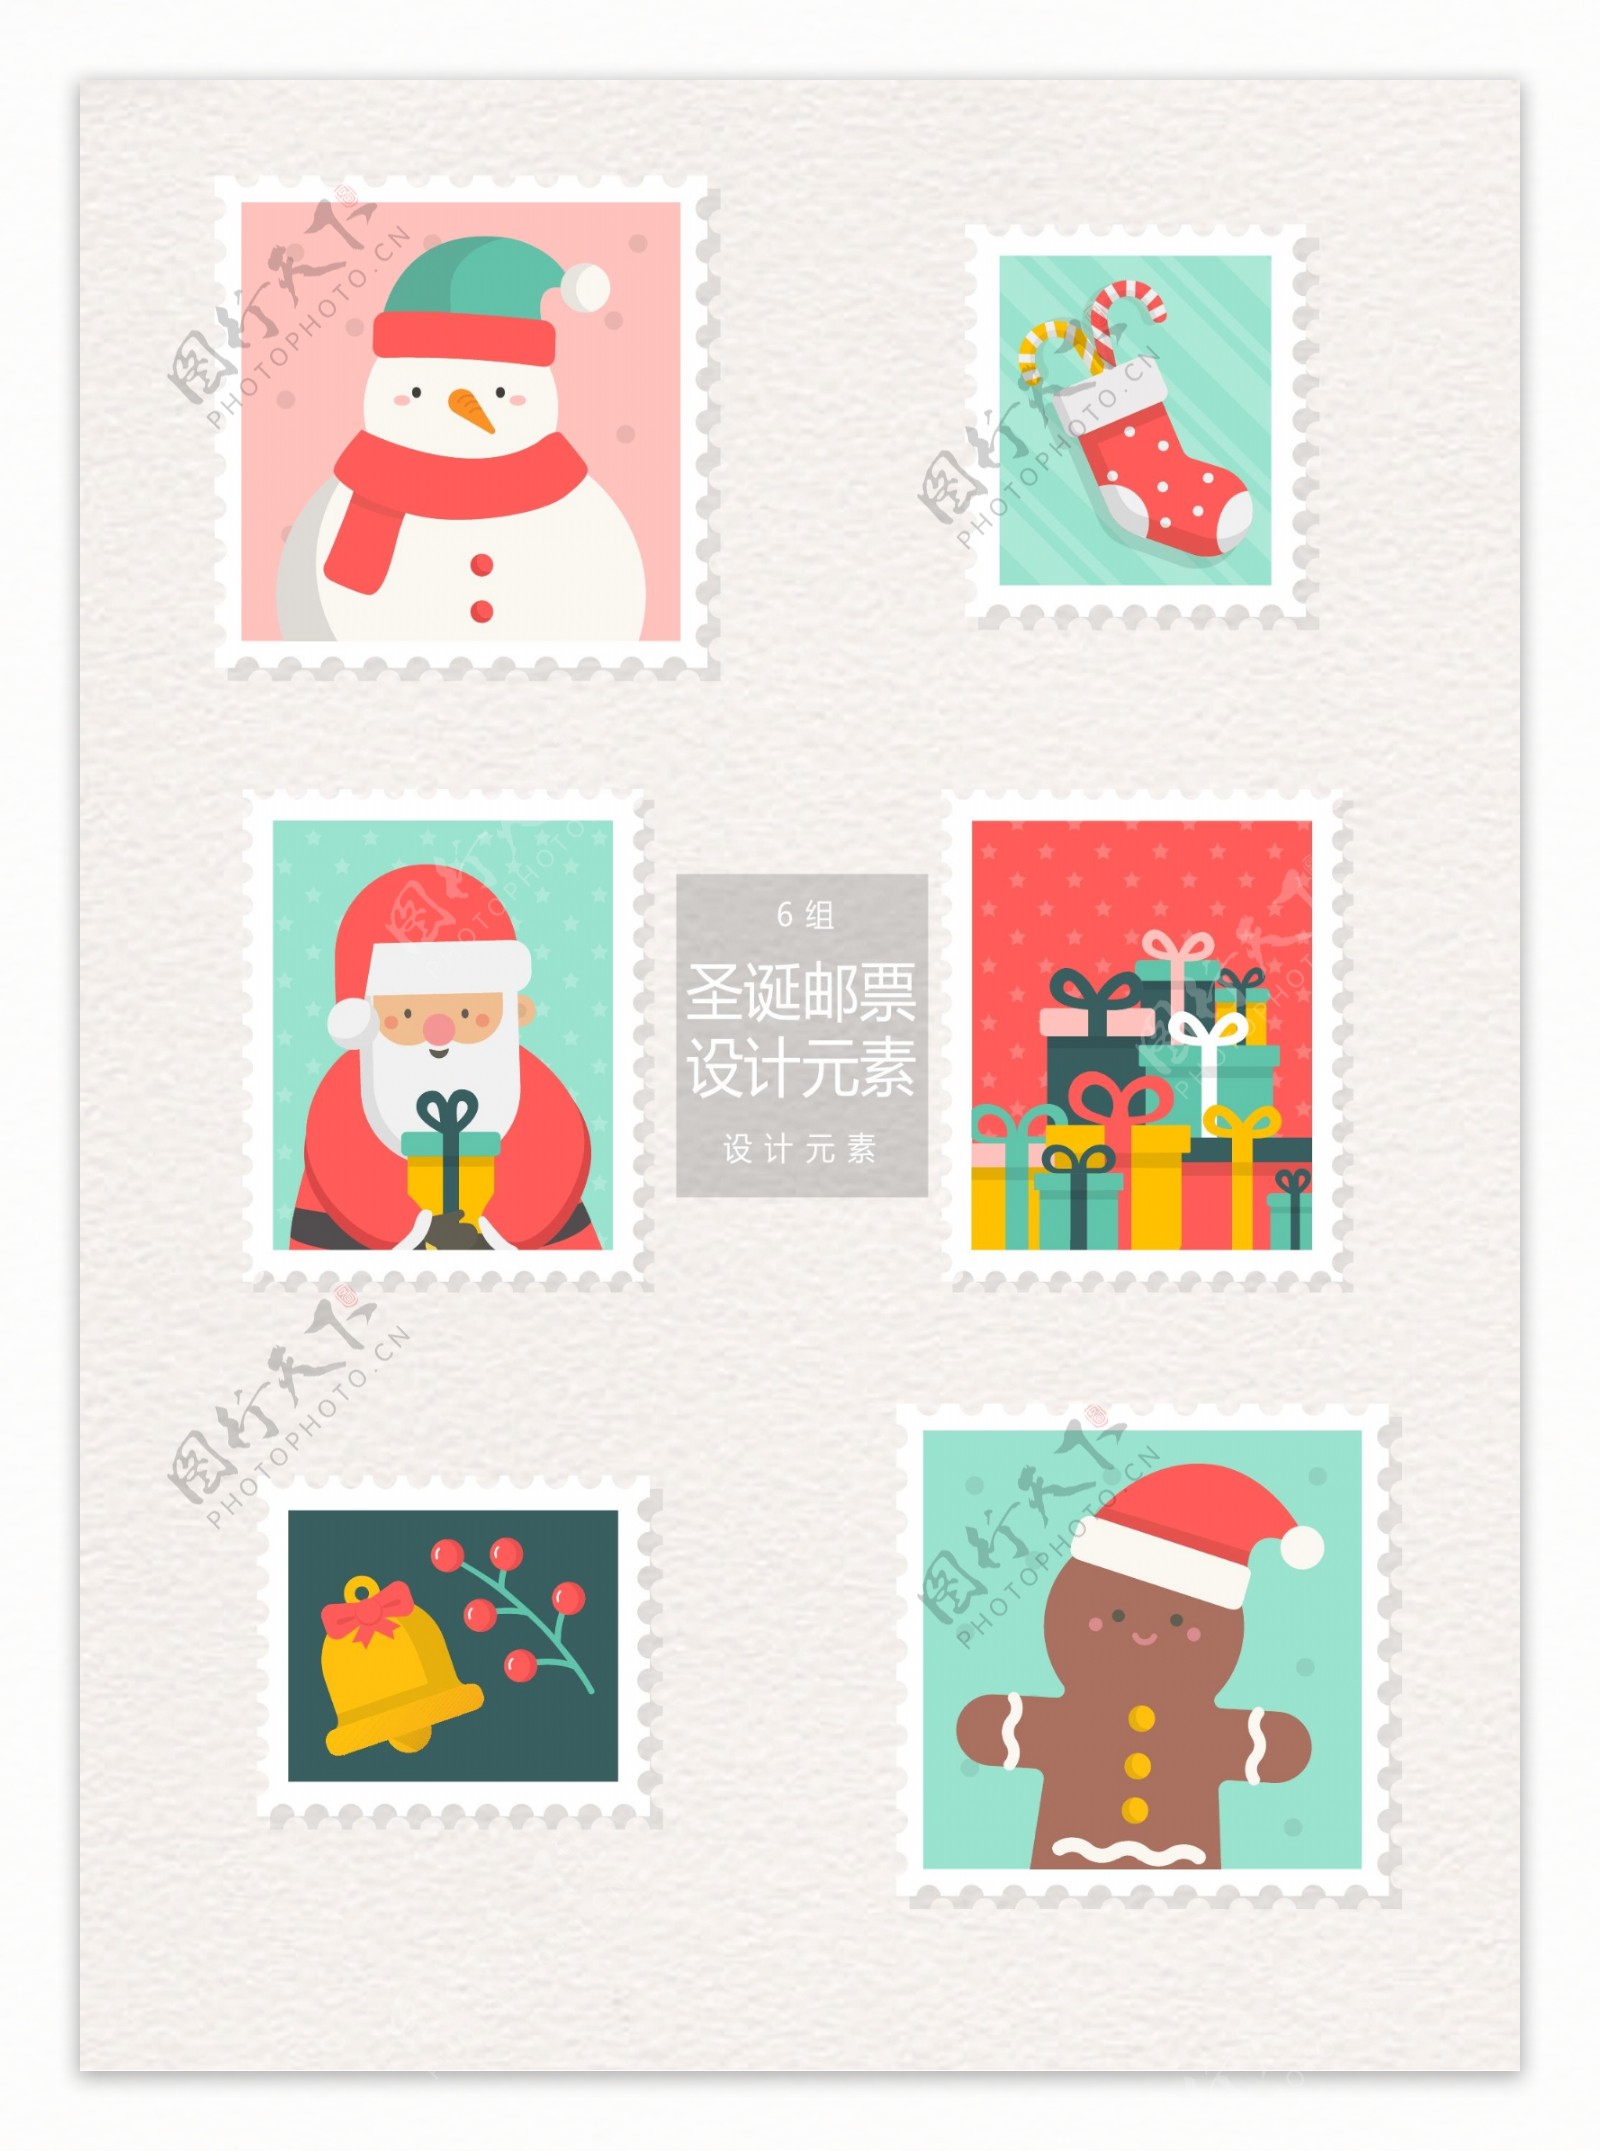 圣诞节邮票标签设计